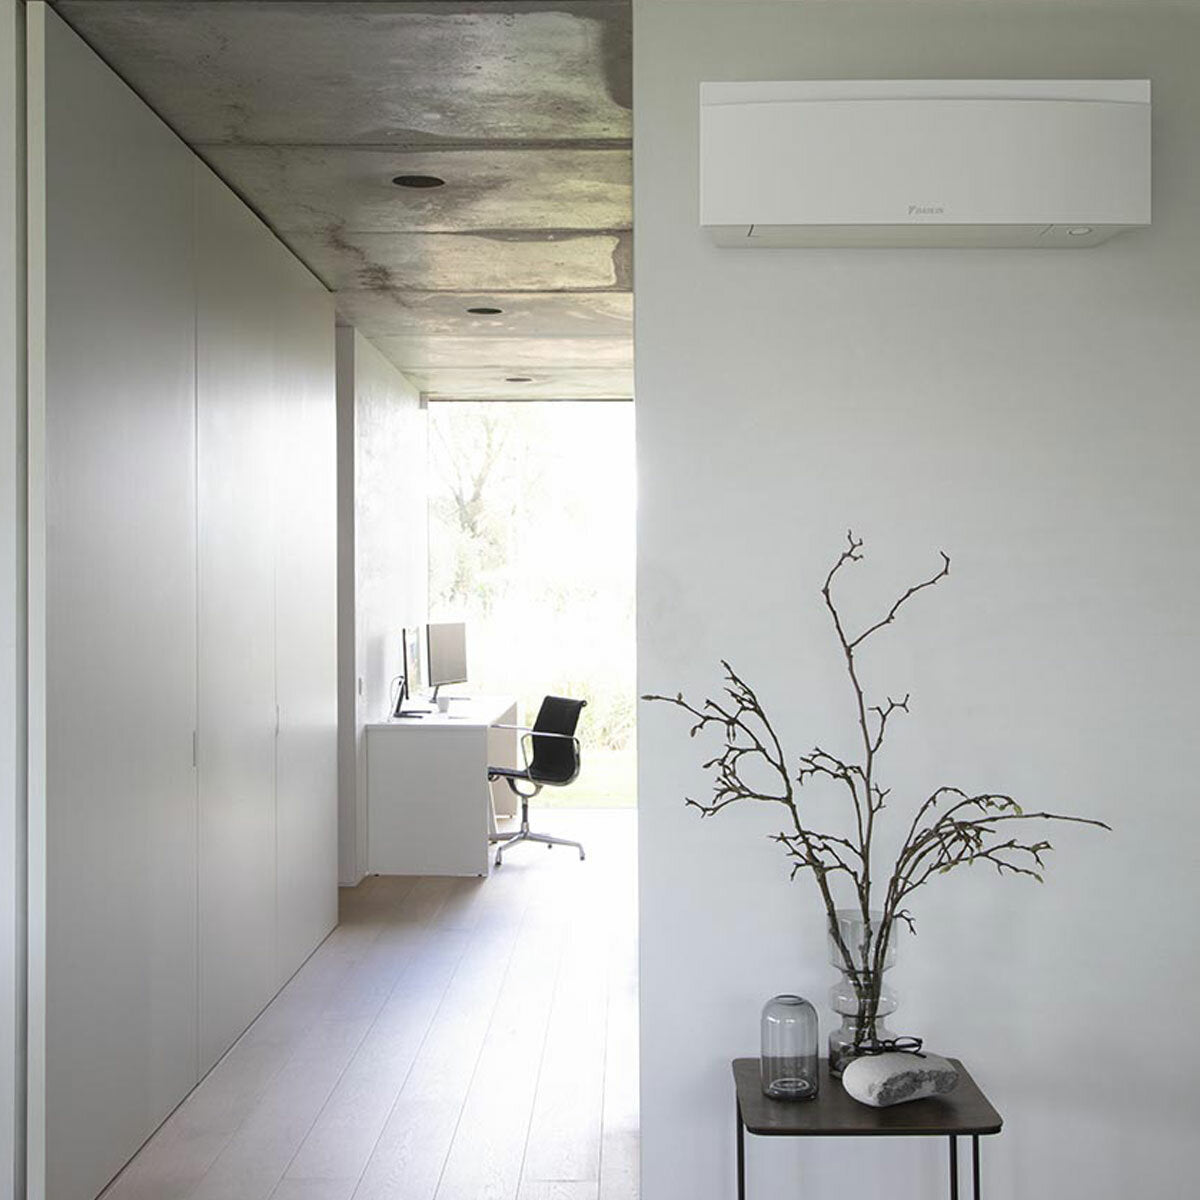 Daikin Emura 3 trial split air conditioner 7000+7000+9000 BTU inverter A++ wifi outdoor unit 4 kW White